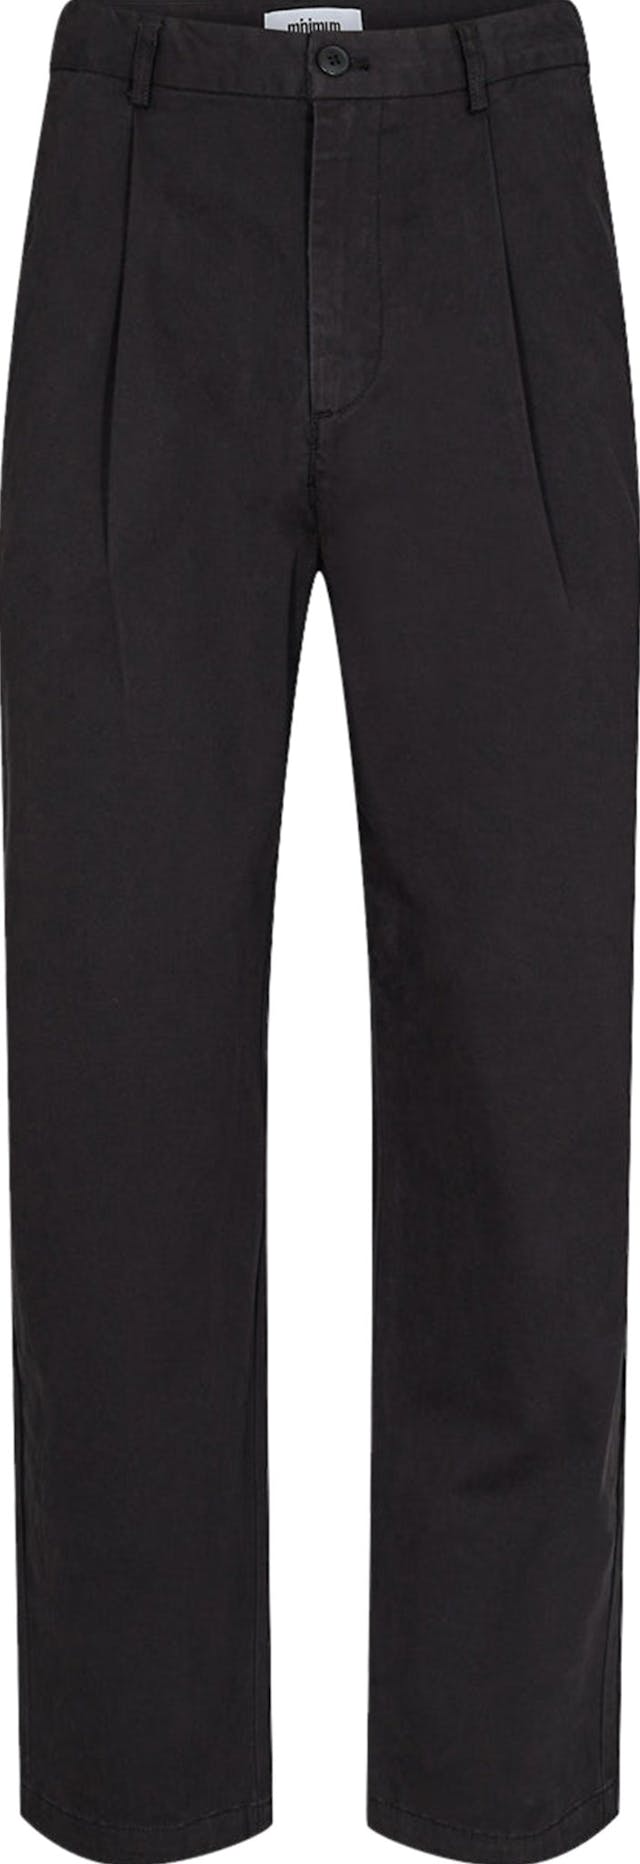 Product image for Bertils 9344 Casual Pants - Men's